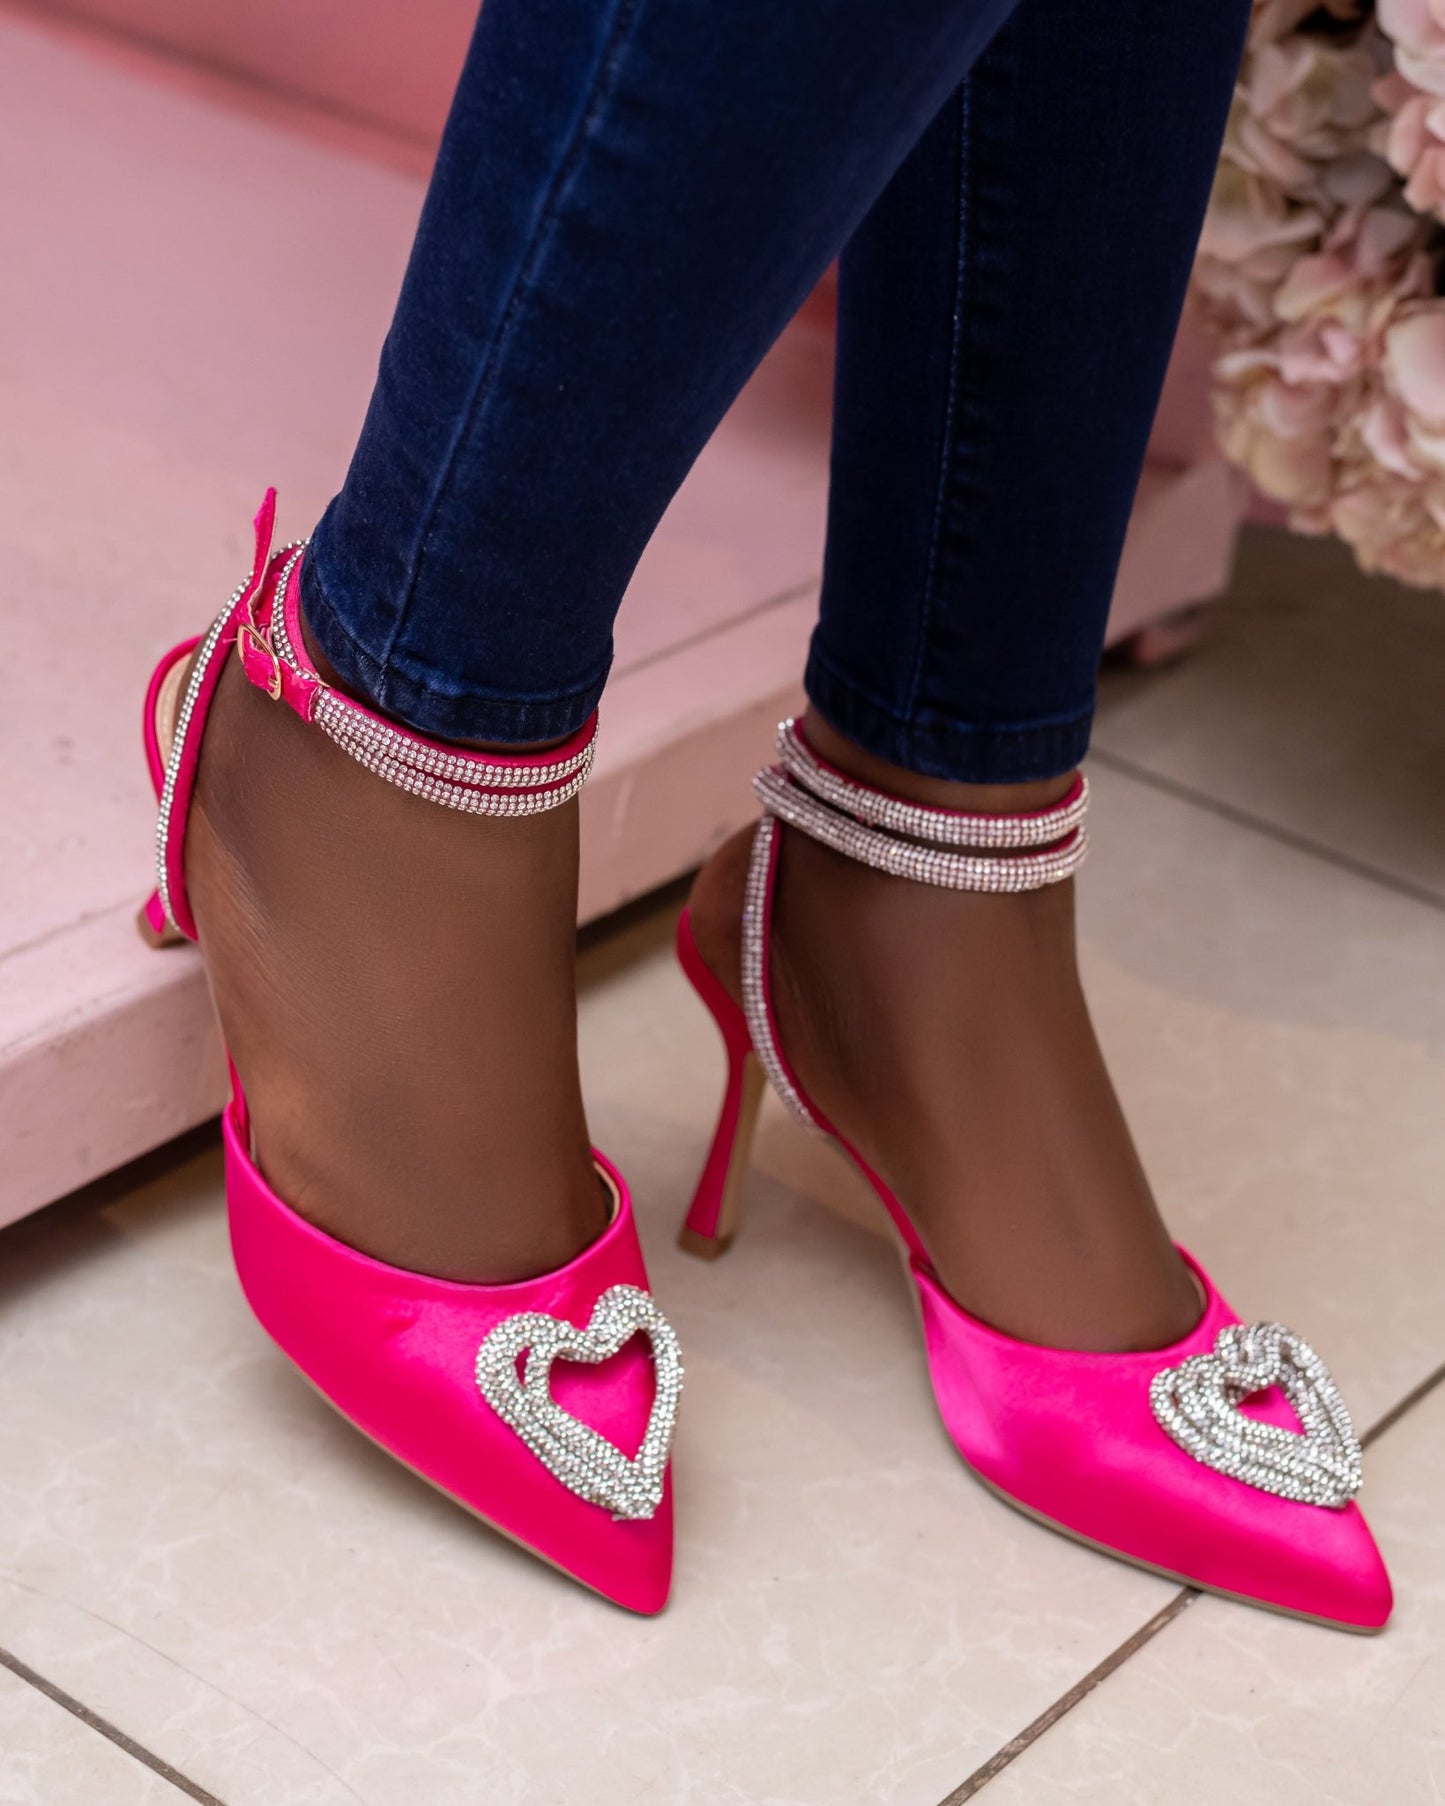 Divine stiletto heels(pink) - Minichic collection 